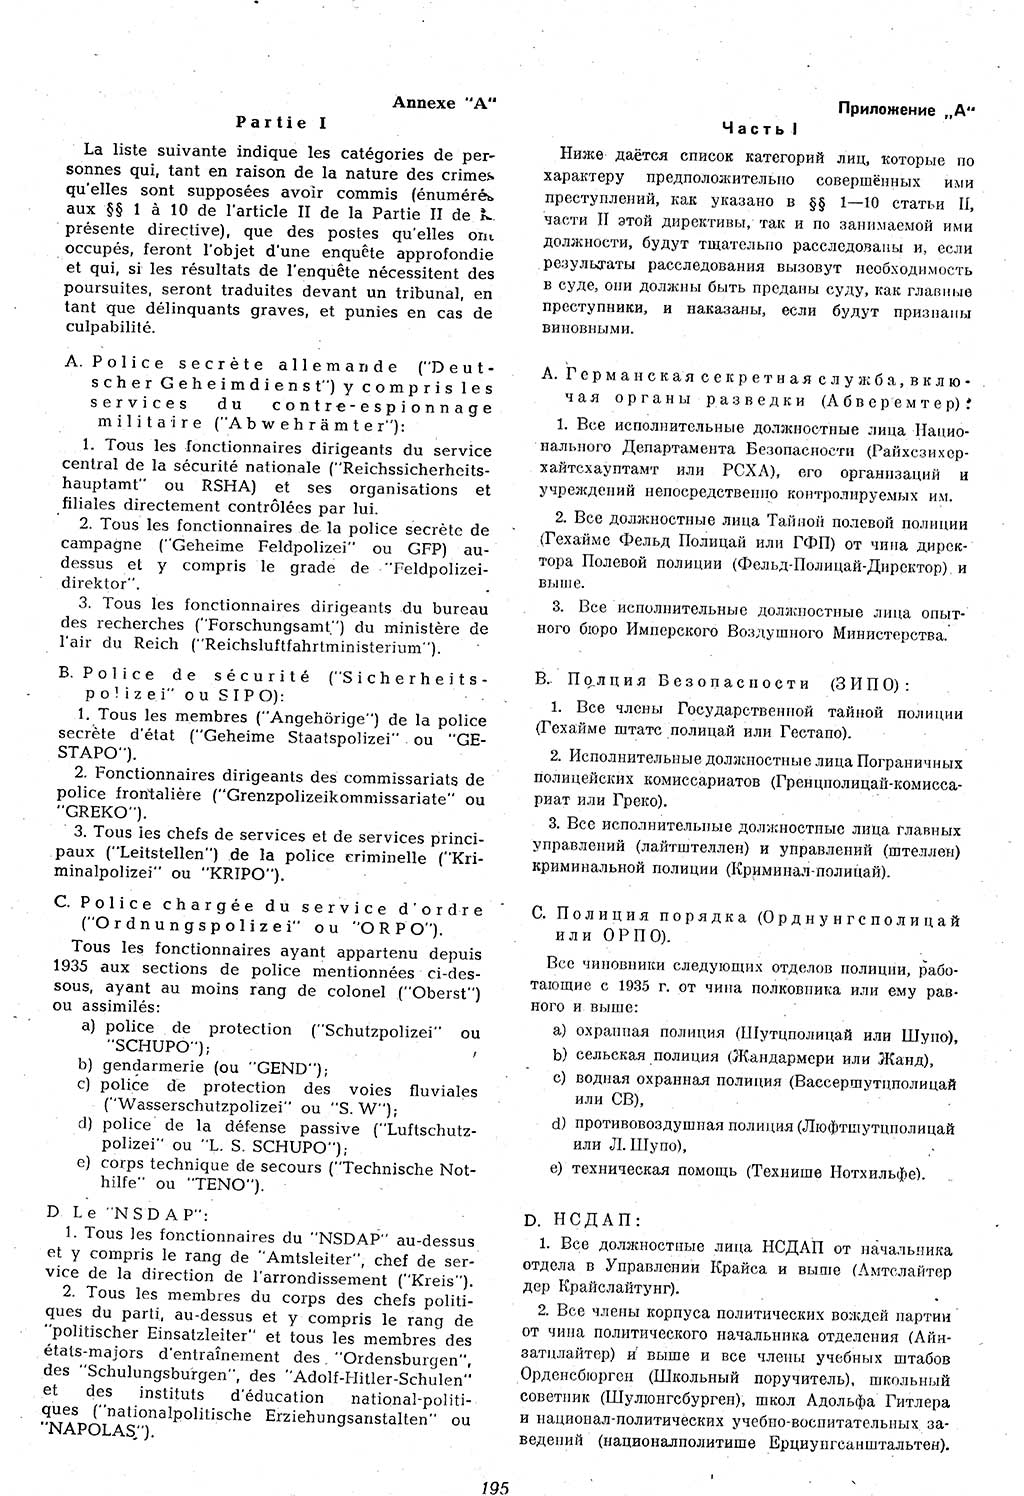 Amtsblatt des Kontrollrats (ABlKR) in Deutschland 1946, Seite 195/1 (ABlKR Dtl. 1946, S. 195/1)